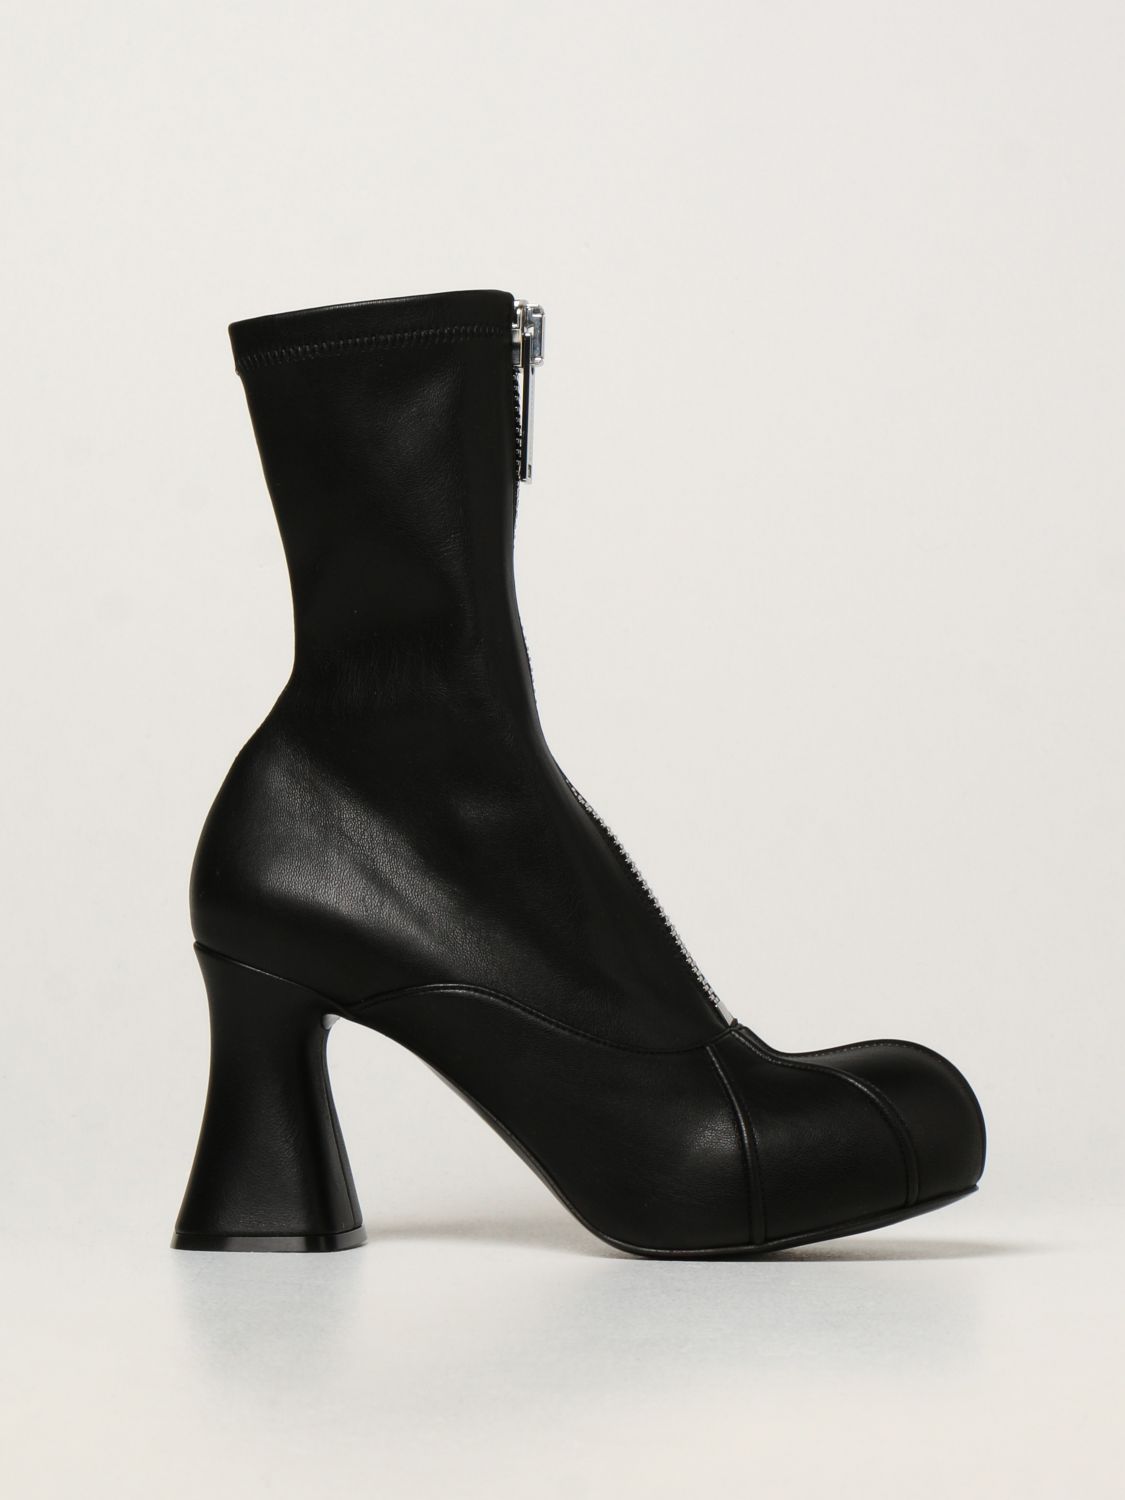 Stella McCartney Stiefeletten mit Plateau-Absatz in Schwarz Damen Schuhe Flache Schuhe Schnürschuhe und Schnürstiefel 